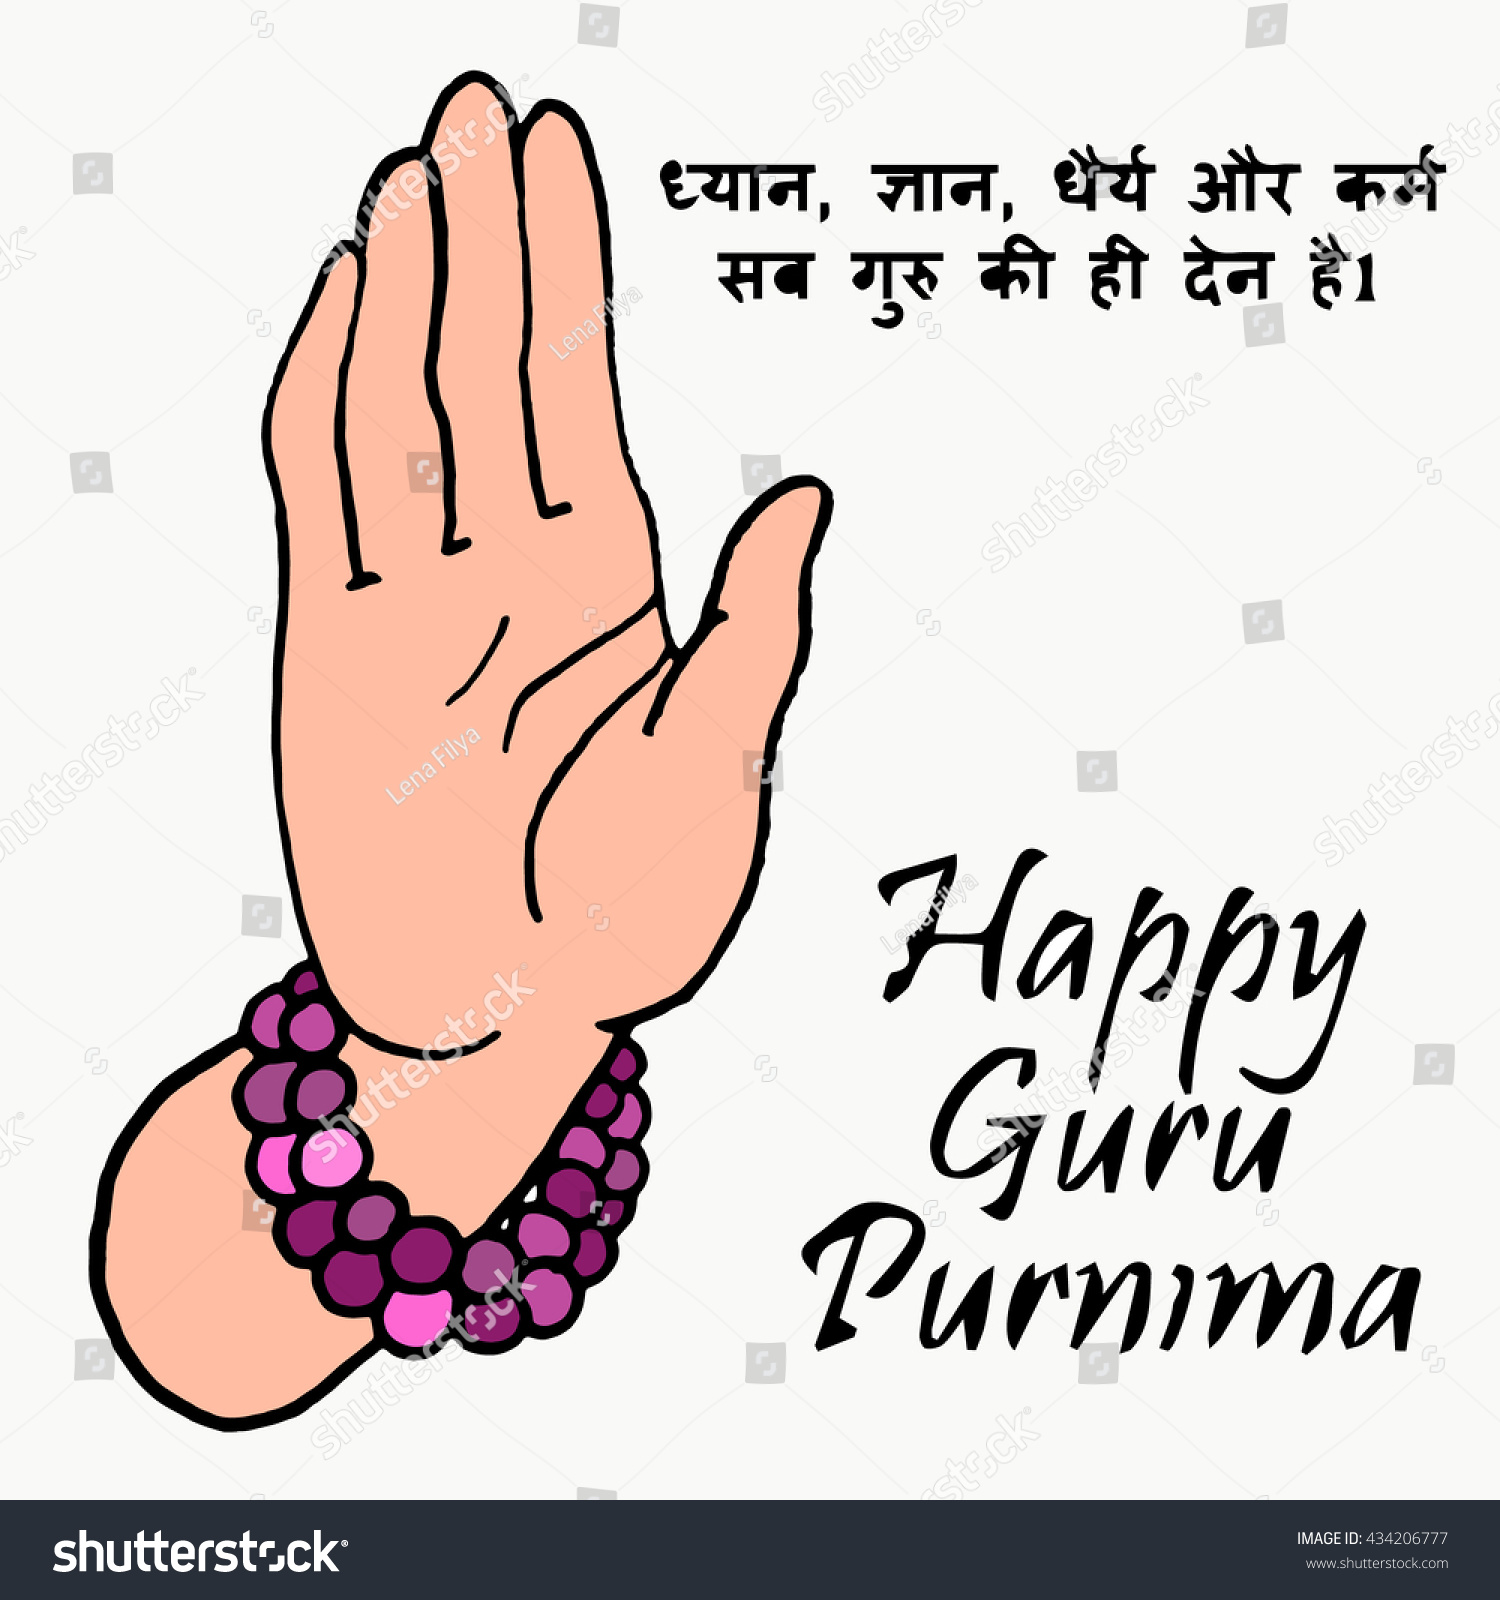 Happy Guru Purnima The Day Of Honoring The Guru The Day Of Guru Purnima Card Design Elements